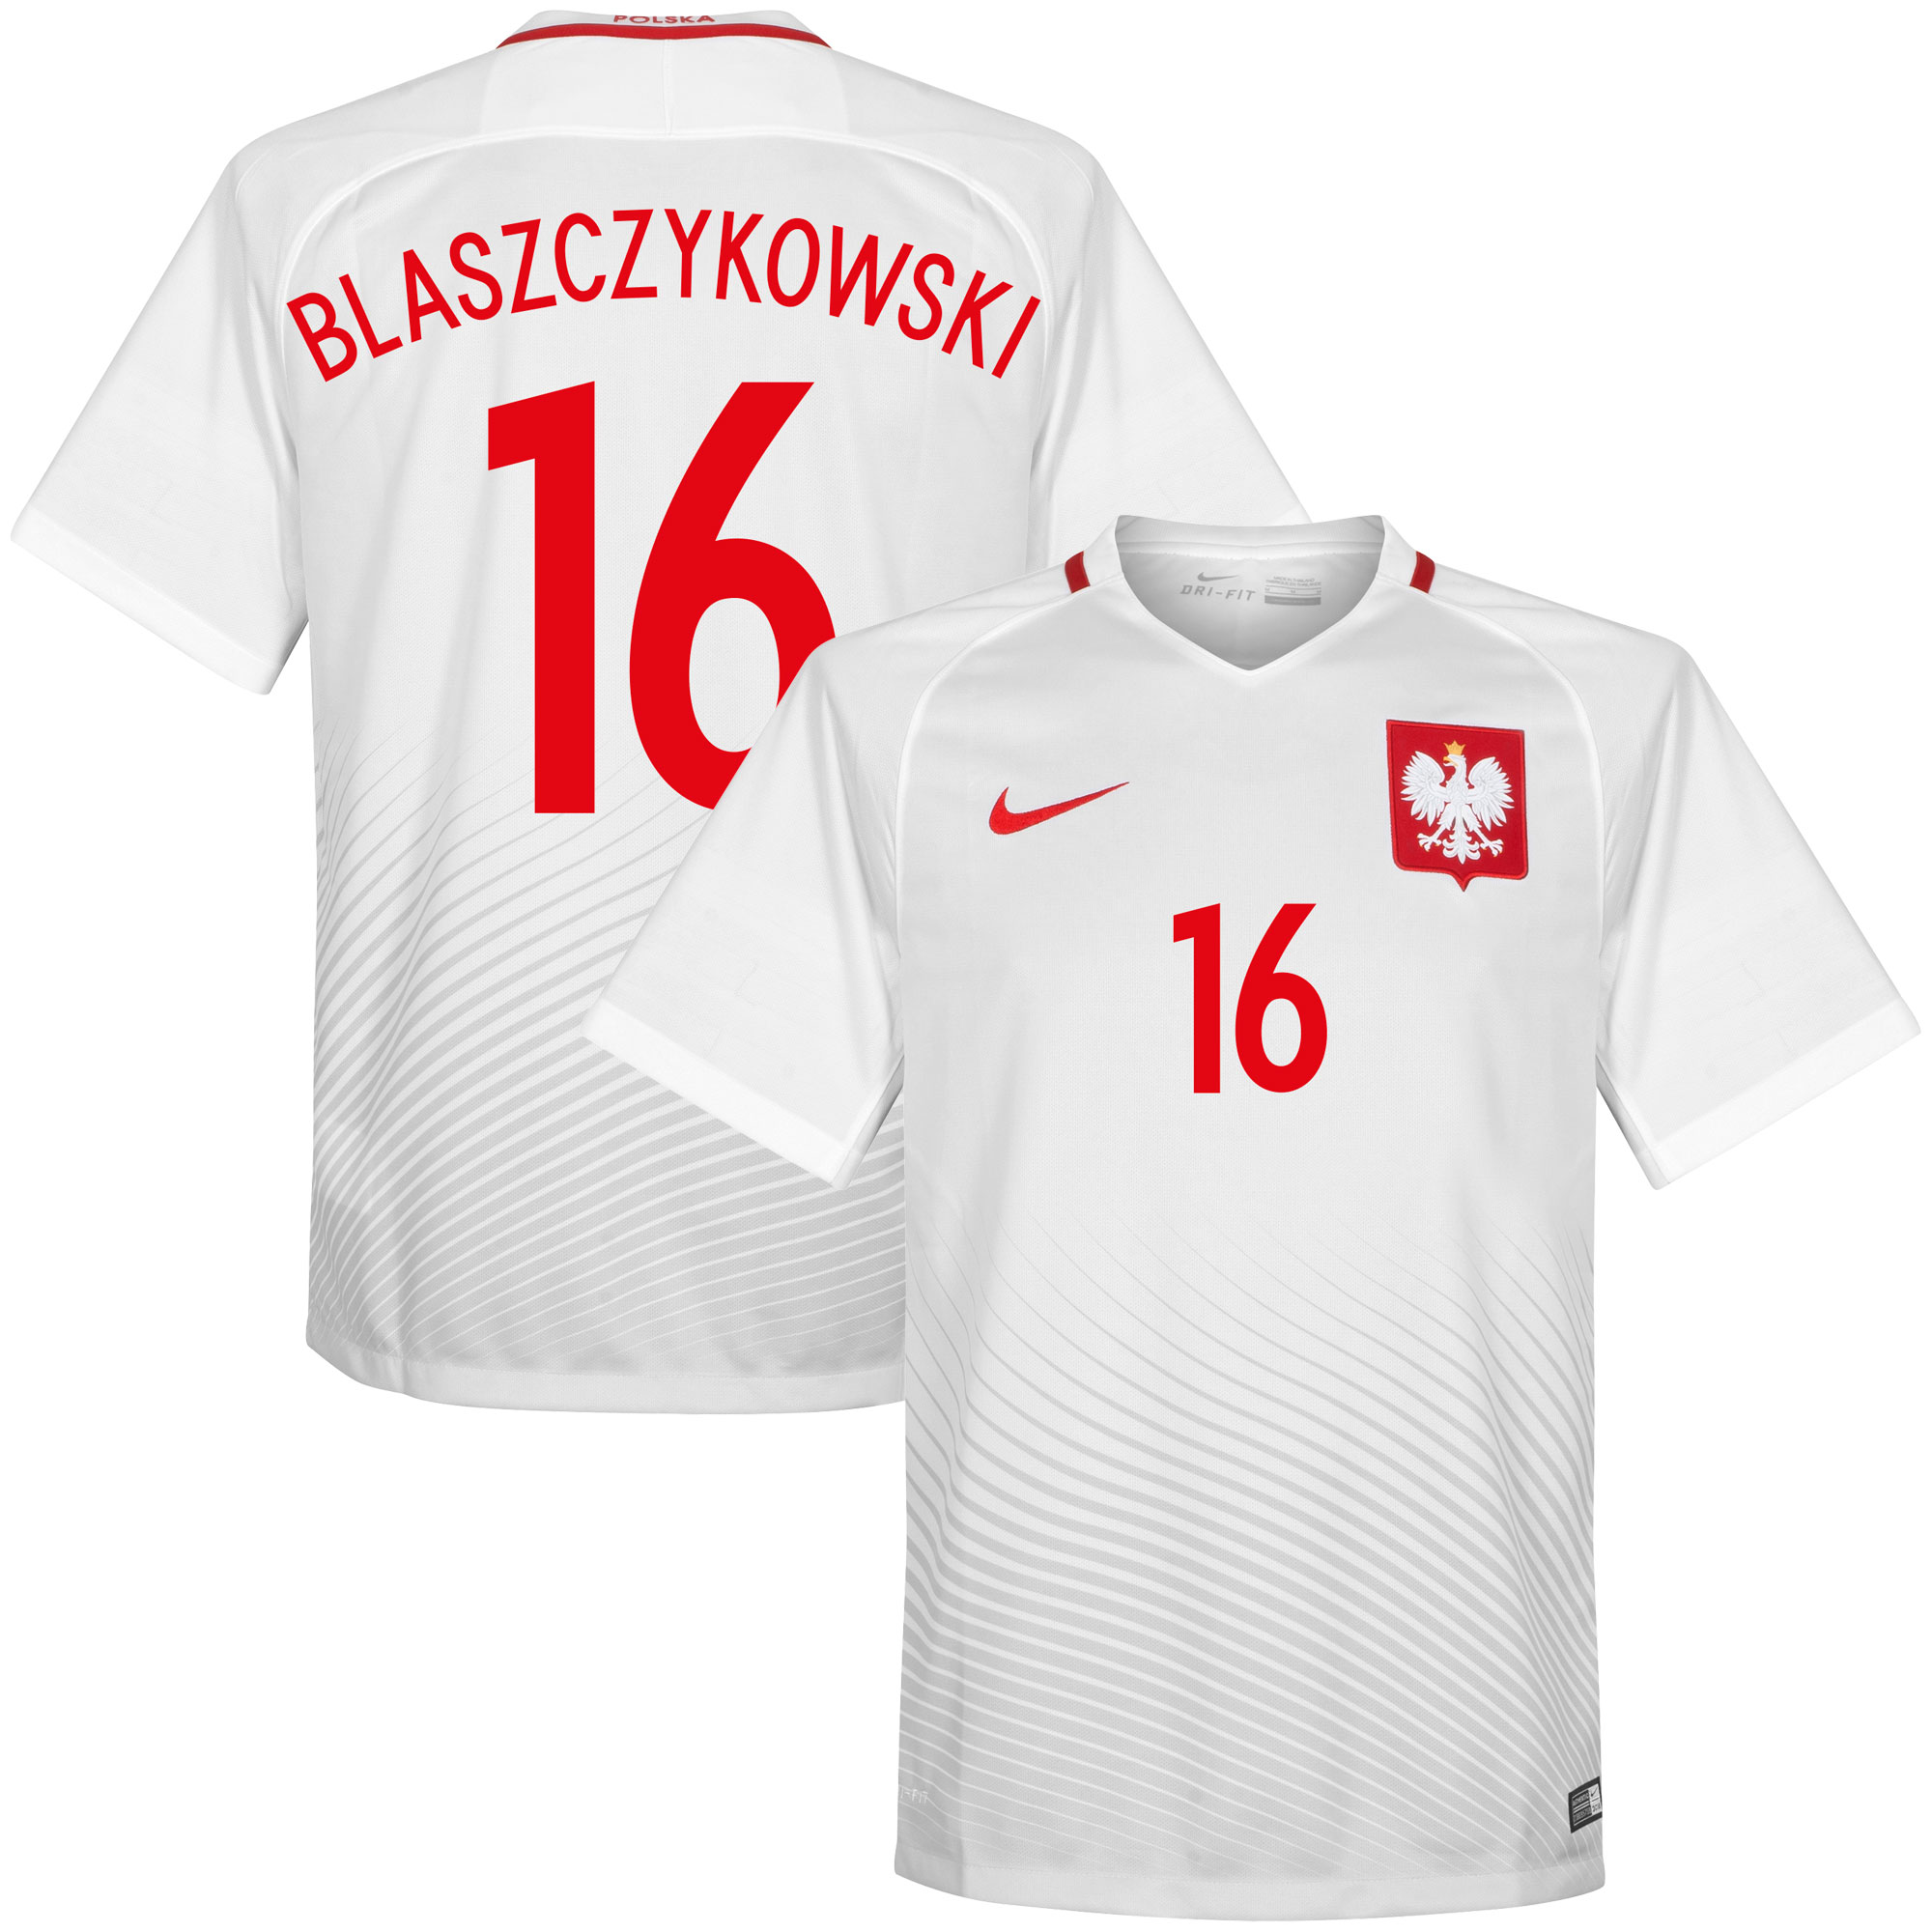 Polen Shirt Thuis 2016-2017 + Blaszczykowski 16 (Fan Style)